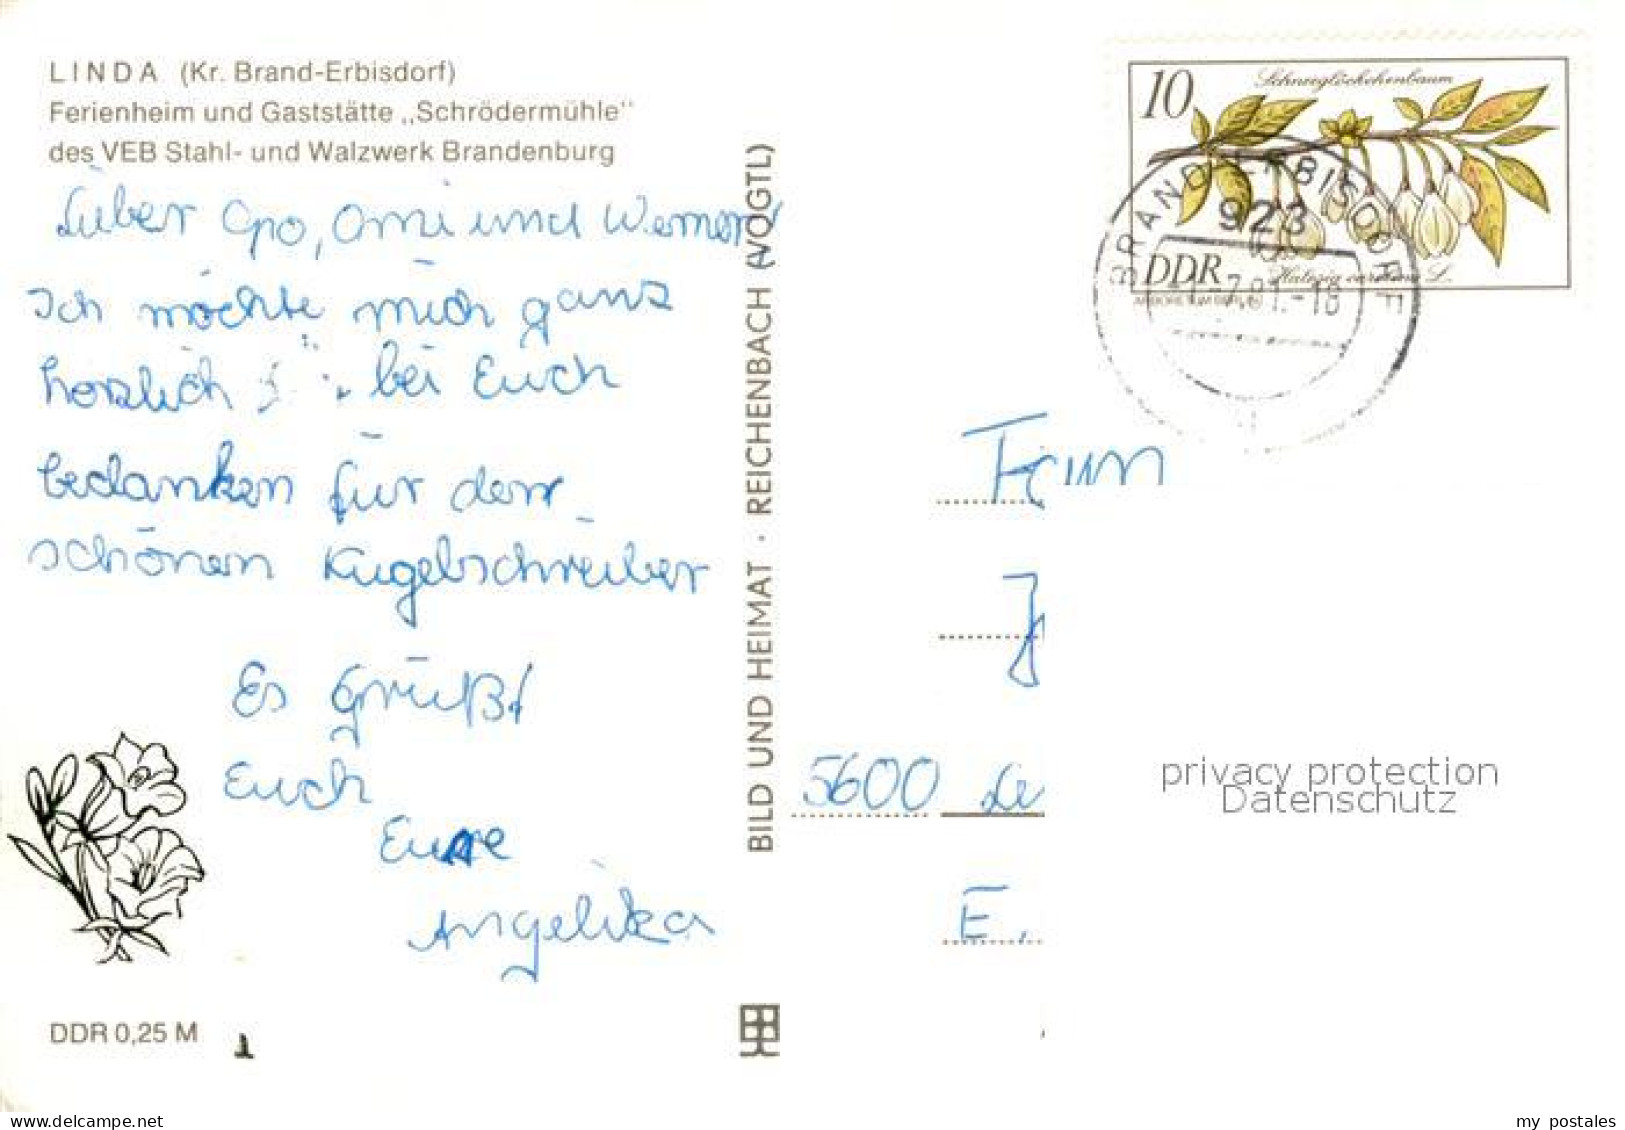 73093199 Linda Brand-Erbisdorf Ferienheim Restaurant Schroedermuehle VEB Stahl-  - Brand-Erbisdorf